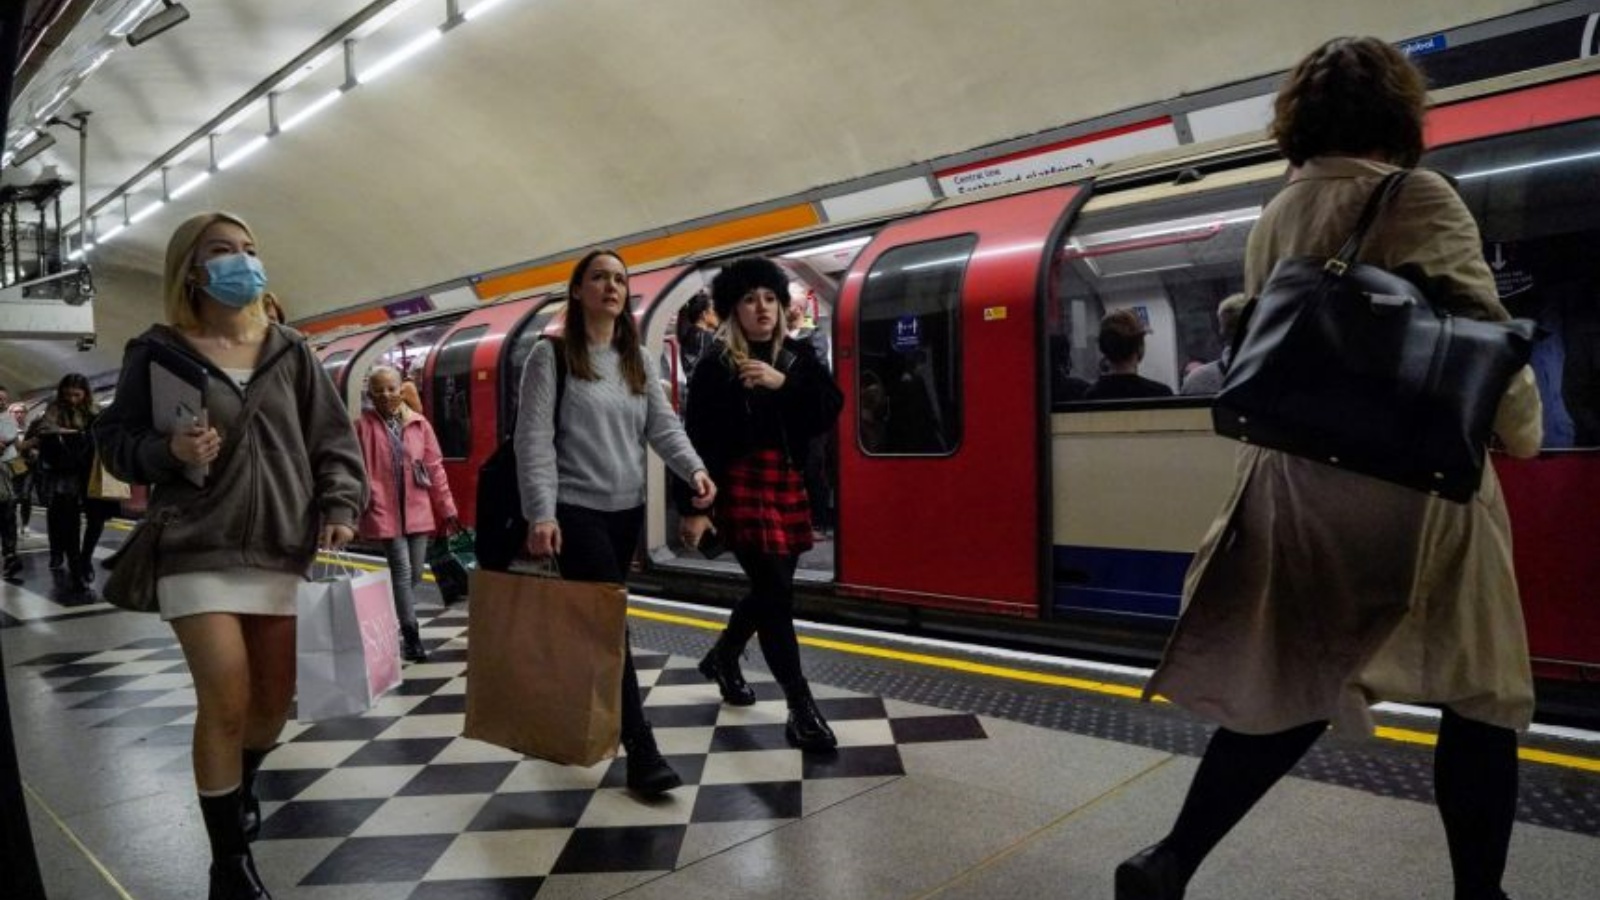 ركّاب، بعضهم يرتدون أقنعة، يمشون على طول رصيف بعد خروجهم من قطار أنفاق النقل إلى لندن في وسط لندن. في 19 تشرين الأول/أكتوبر 2021.